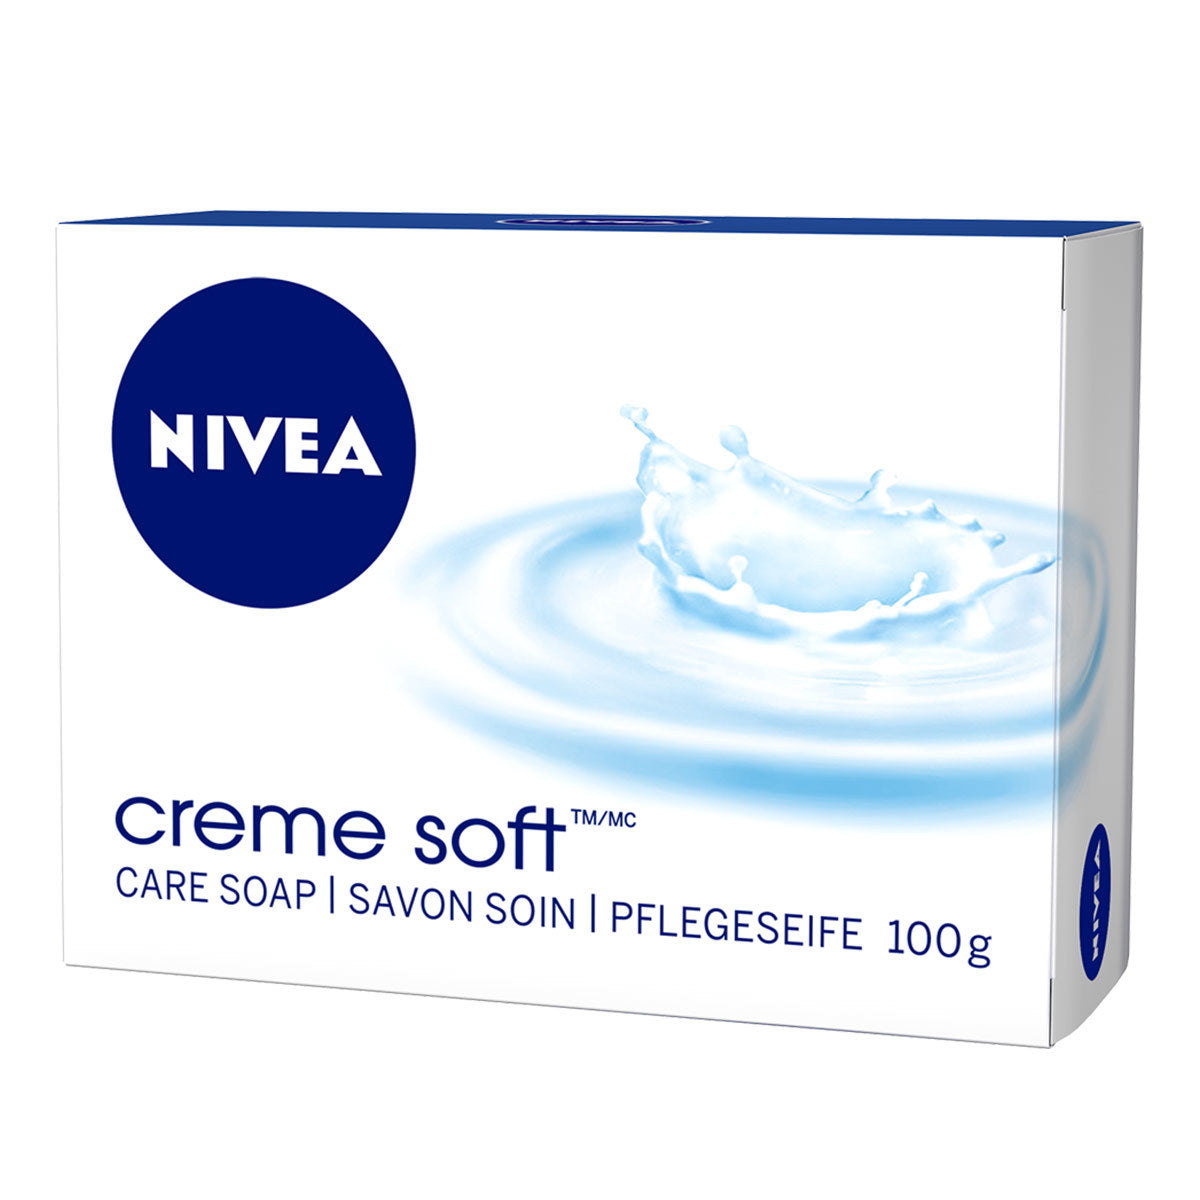 Primary image of Nivea Cream Soft Soap